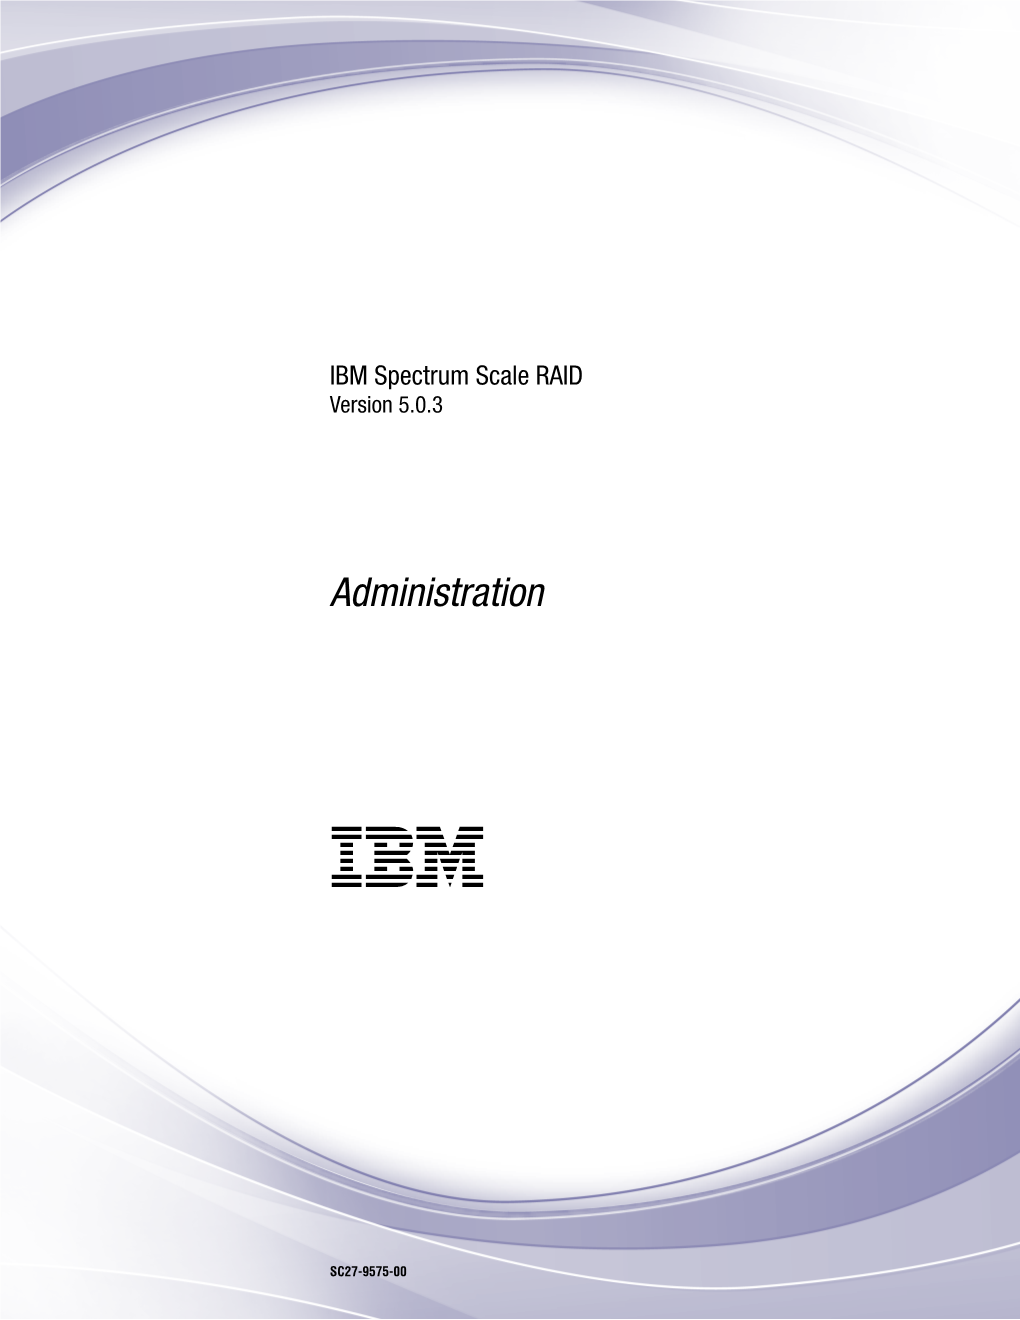 IBM Spectrum Scale RAID 5.0.3: Administration Figures